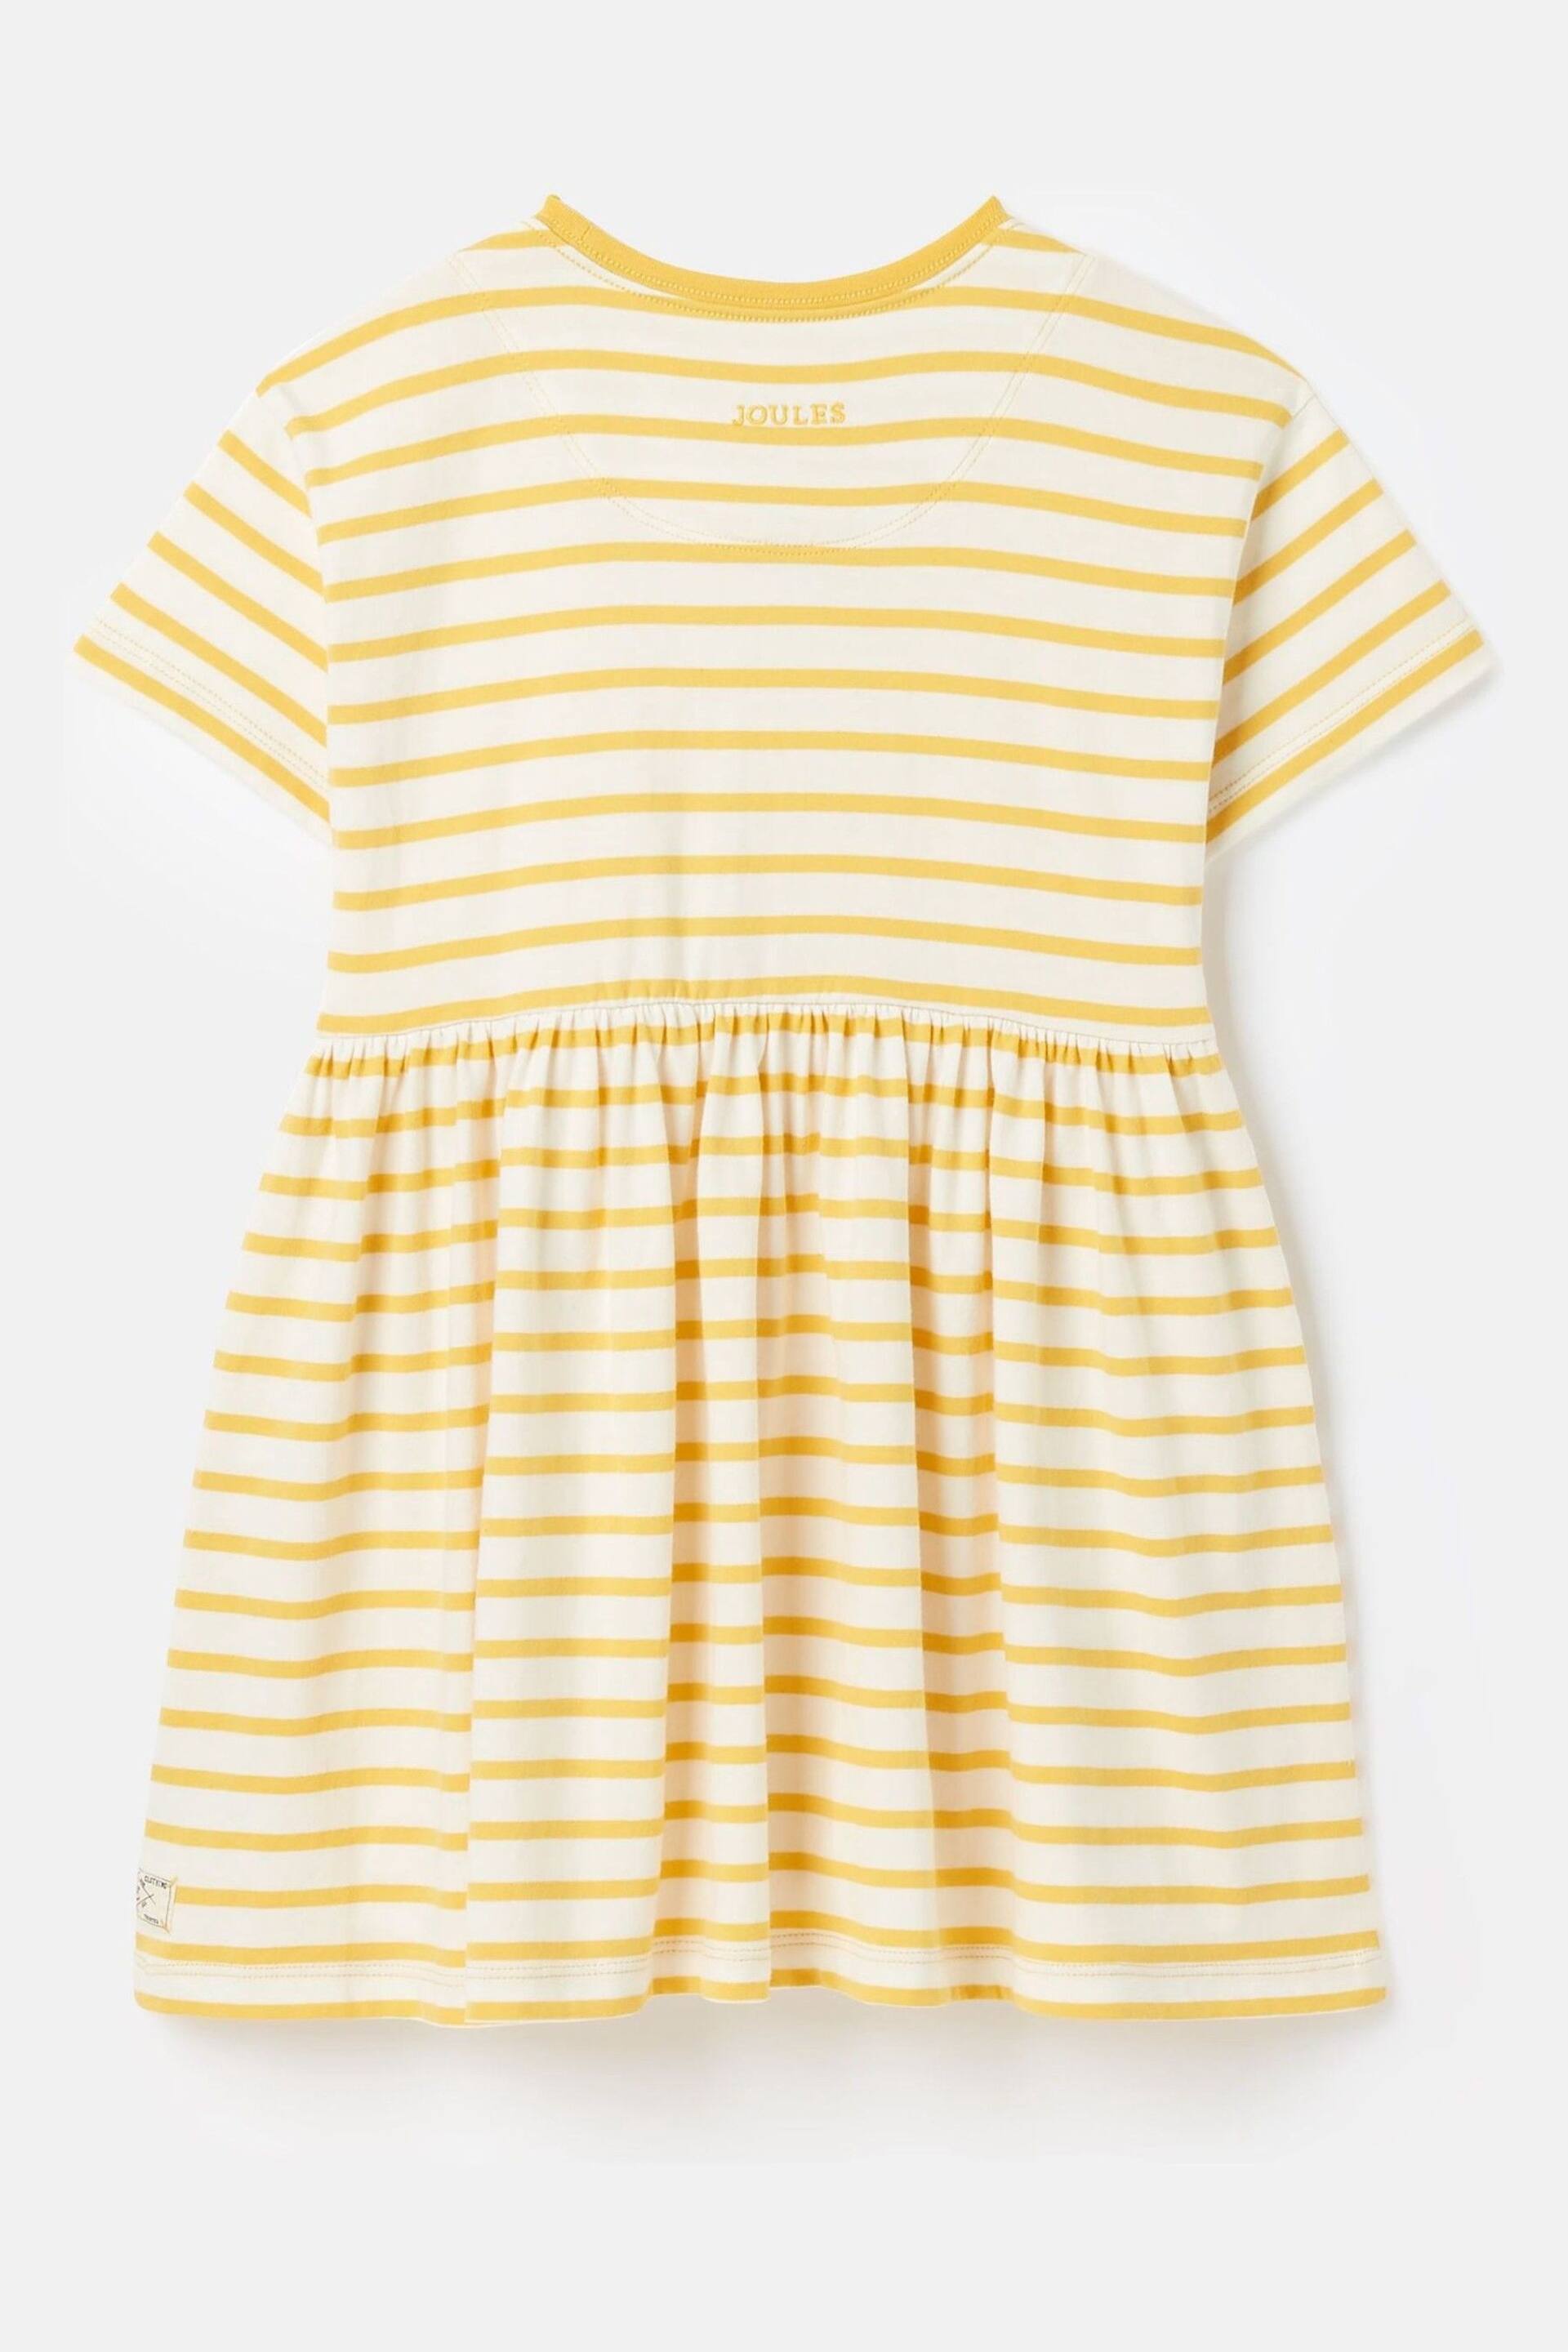 Joules Skye Yellow Striped Jersey T-Shirt Dress - Image 6 of 9